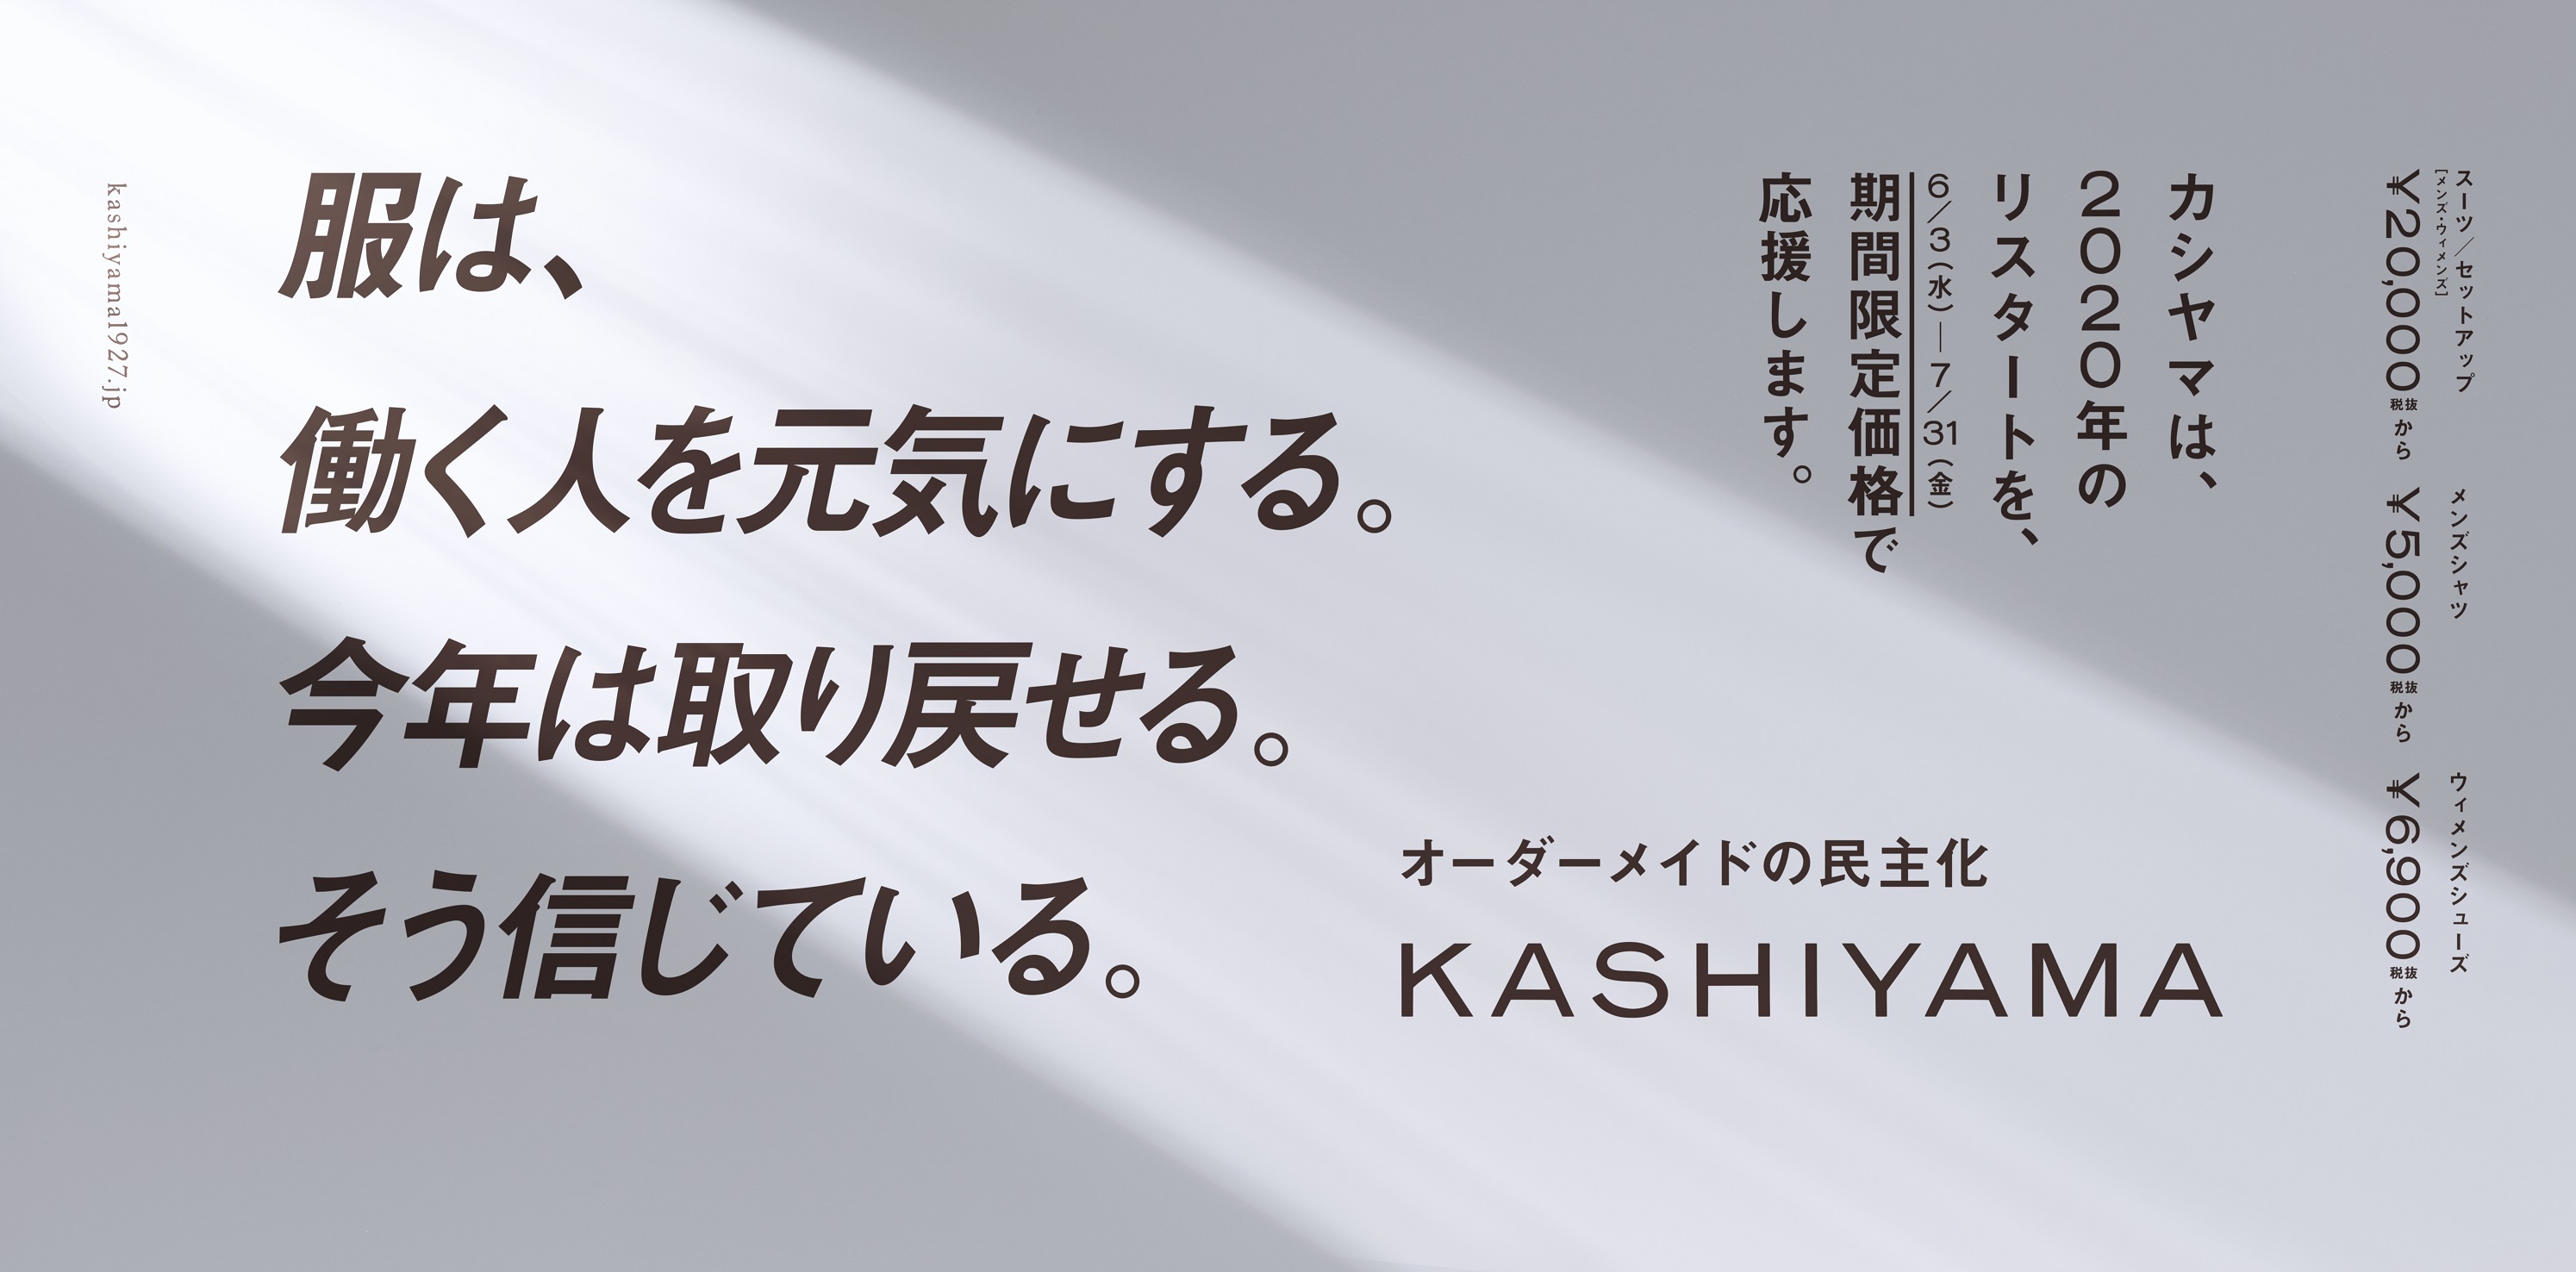 オーダーメイド ブランド Kashiyama 年のリスタートを 期間限定価格で応援 キャンペーンを6月3日 水 より開始 株式会社オンワードパーソナルスタイルのプレスリリース